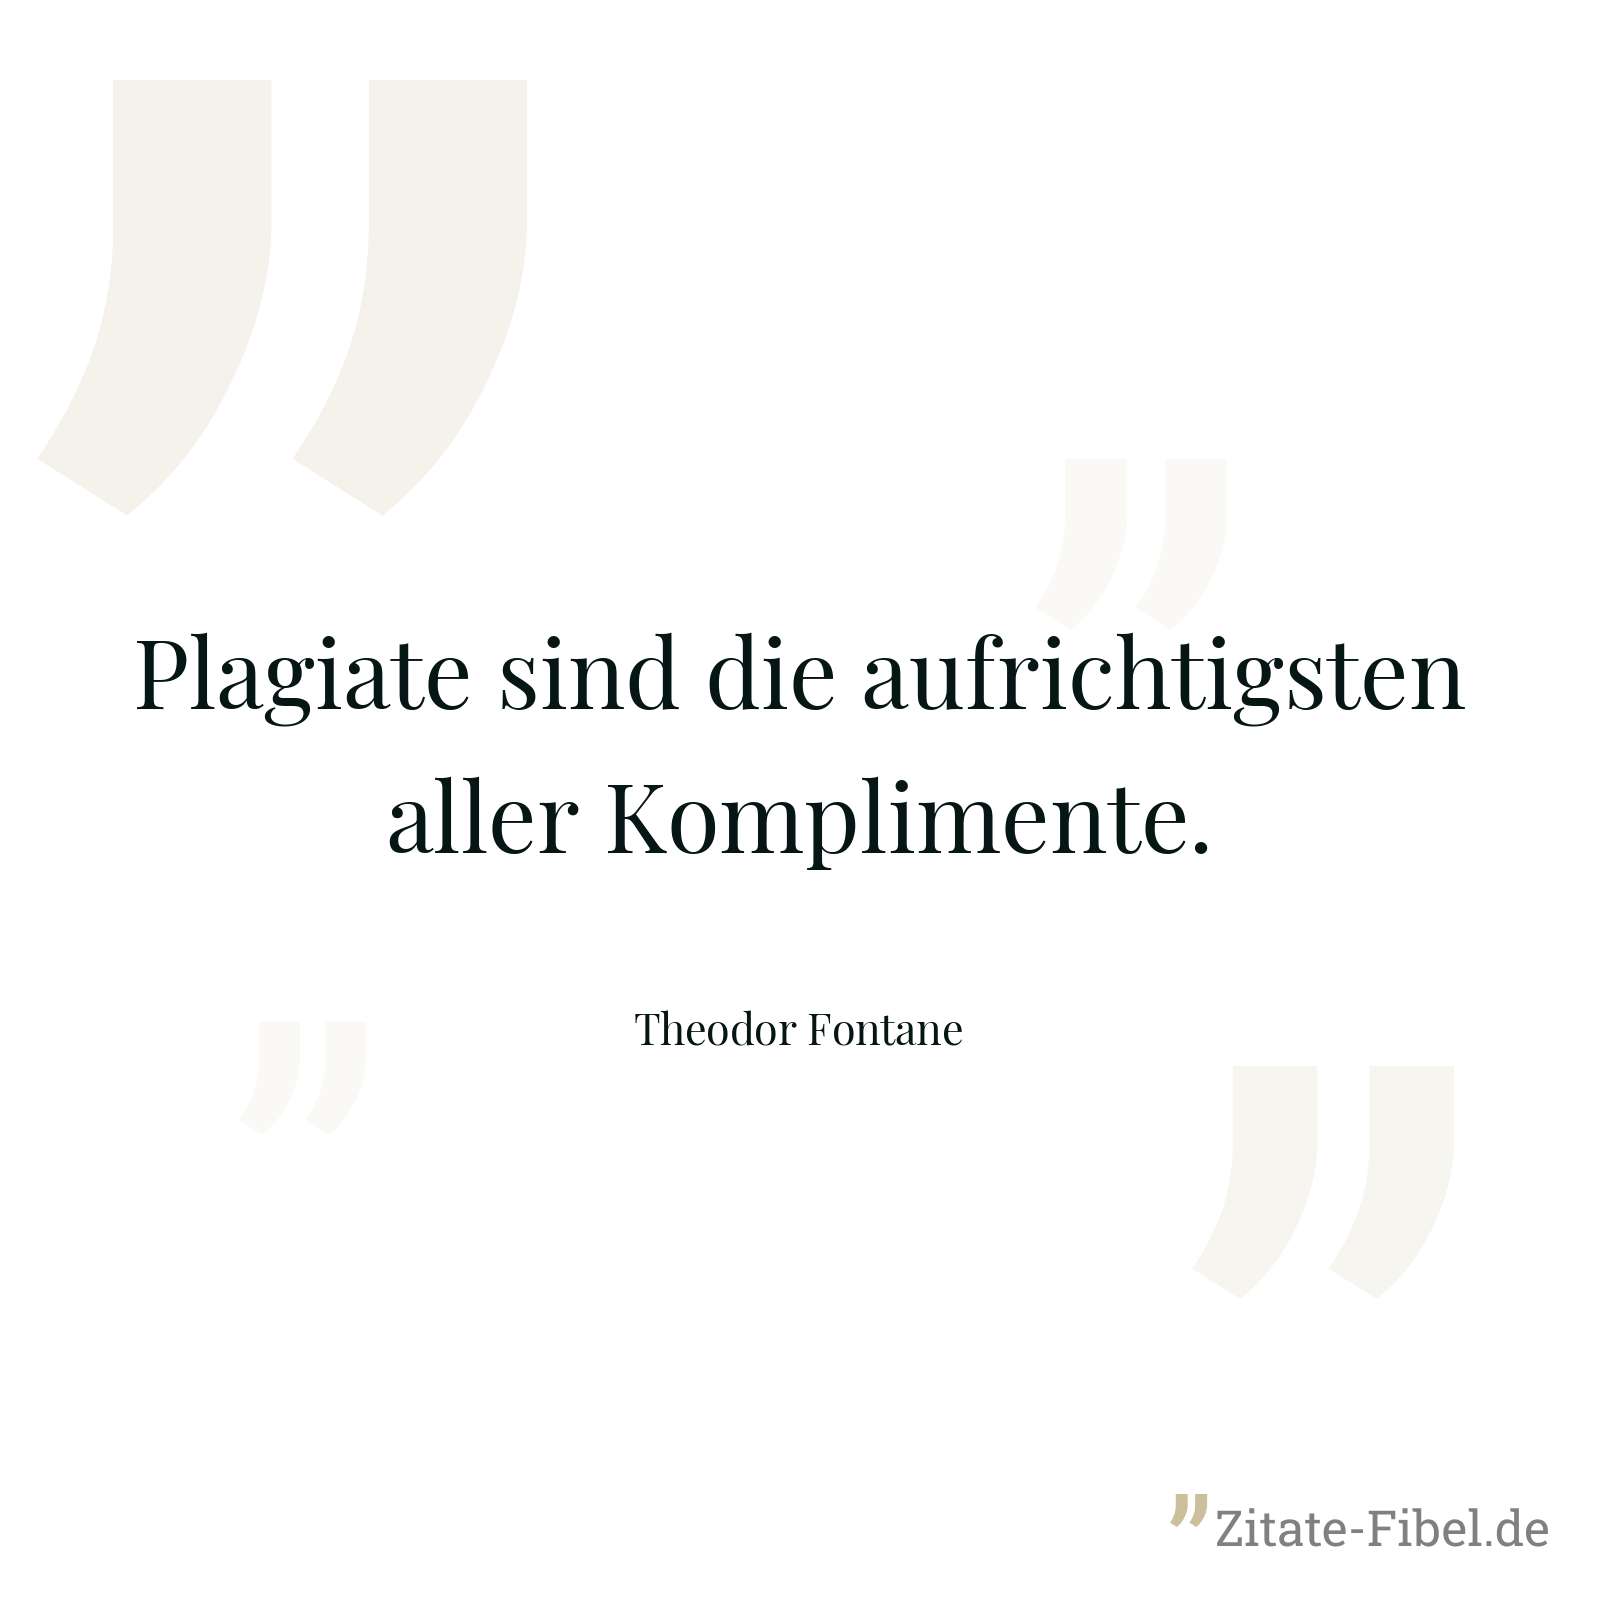 Plagiate sind die aufrichtigsten aller Komplimente. - Theodor Fontane